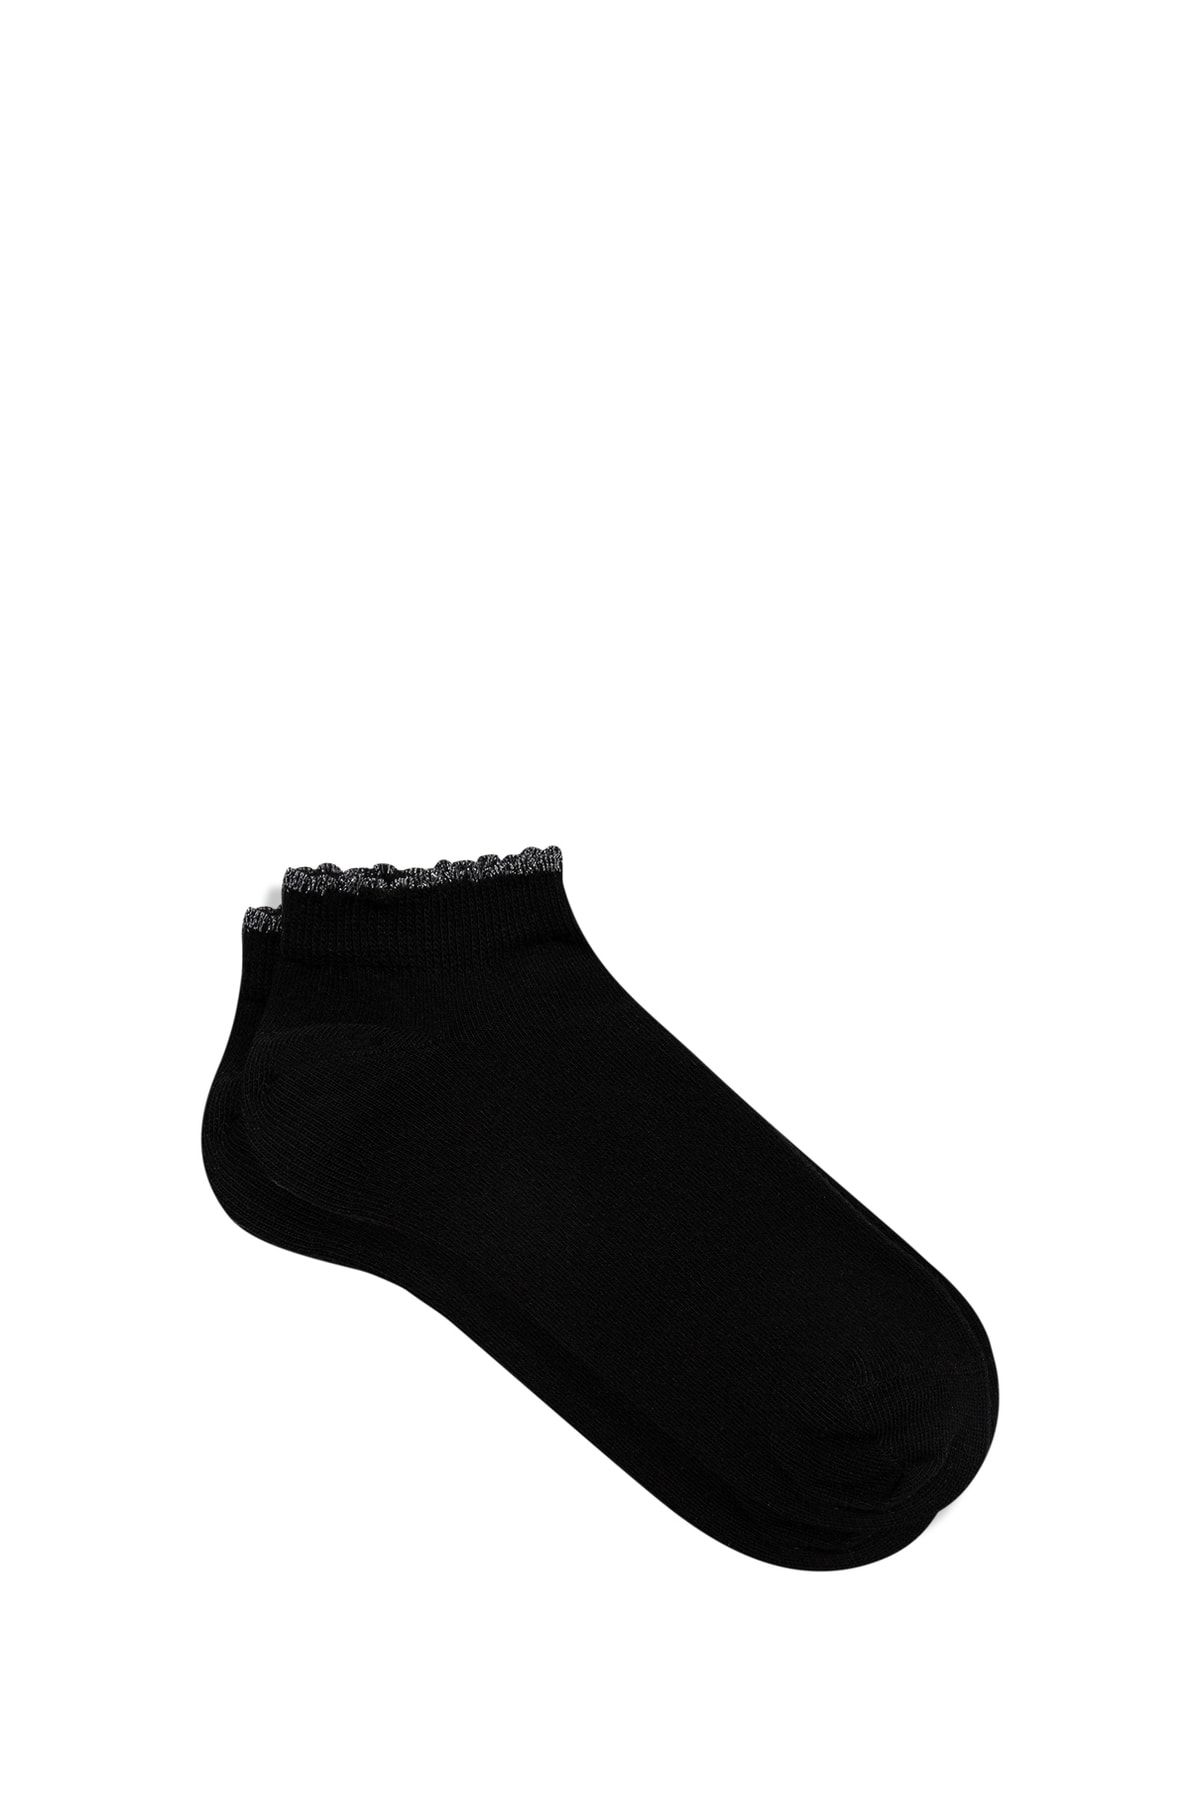 Mavi Siyah Patik Çorabı 1911577-900